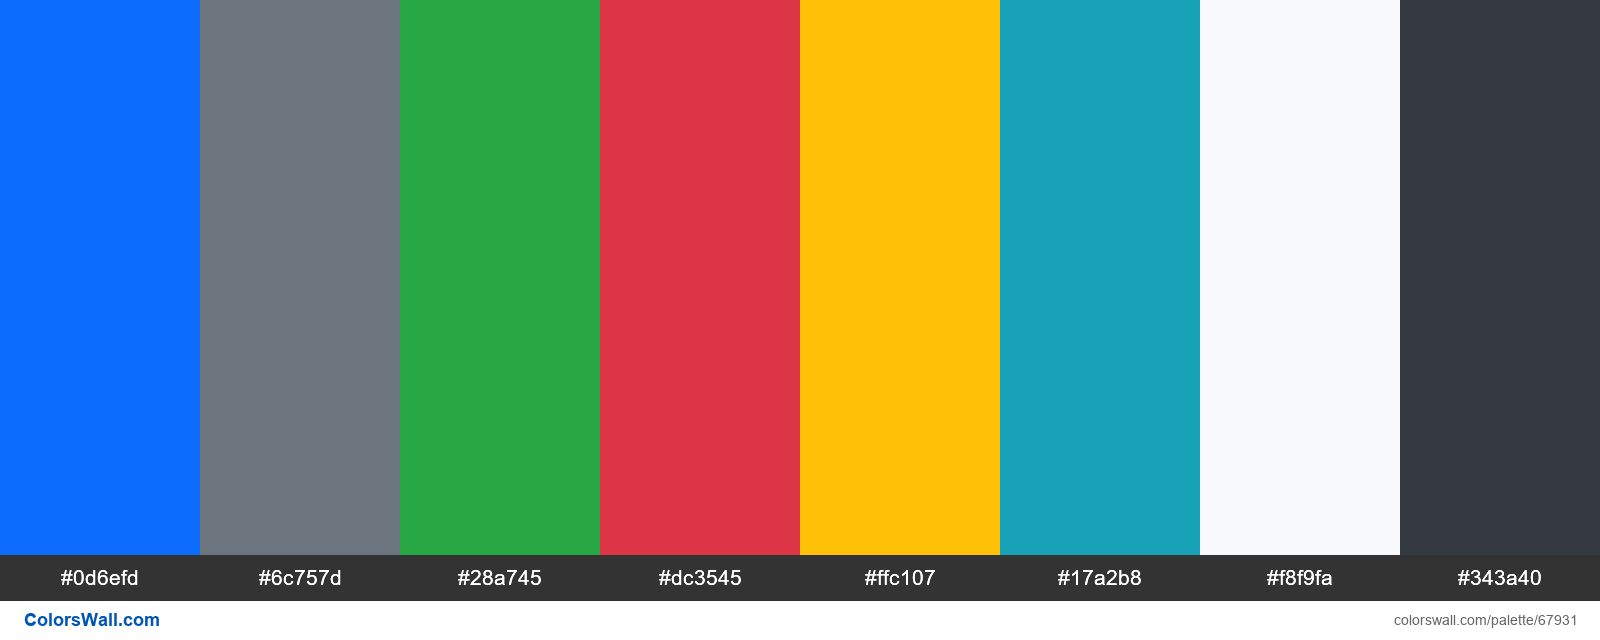 Màu sắc Bootstrap 5: Hãy khám phá những sắc màu mới với Bootstrap 5! Từ các màu sắc tươi sáng đến các gam màu trầm ấm, Bootstrap 5 mang đến cho bạn nhiều lựa chọn để thiết kế website đẹp mắt và độc đáo. Hãy xem hình ảnh liên quan và cảm nhận những sắc màu tuyệt vời của Bootstrap